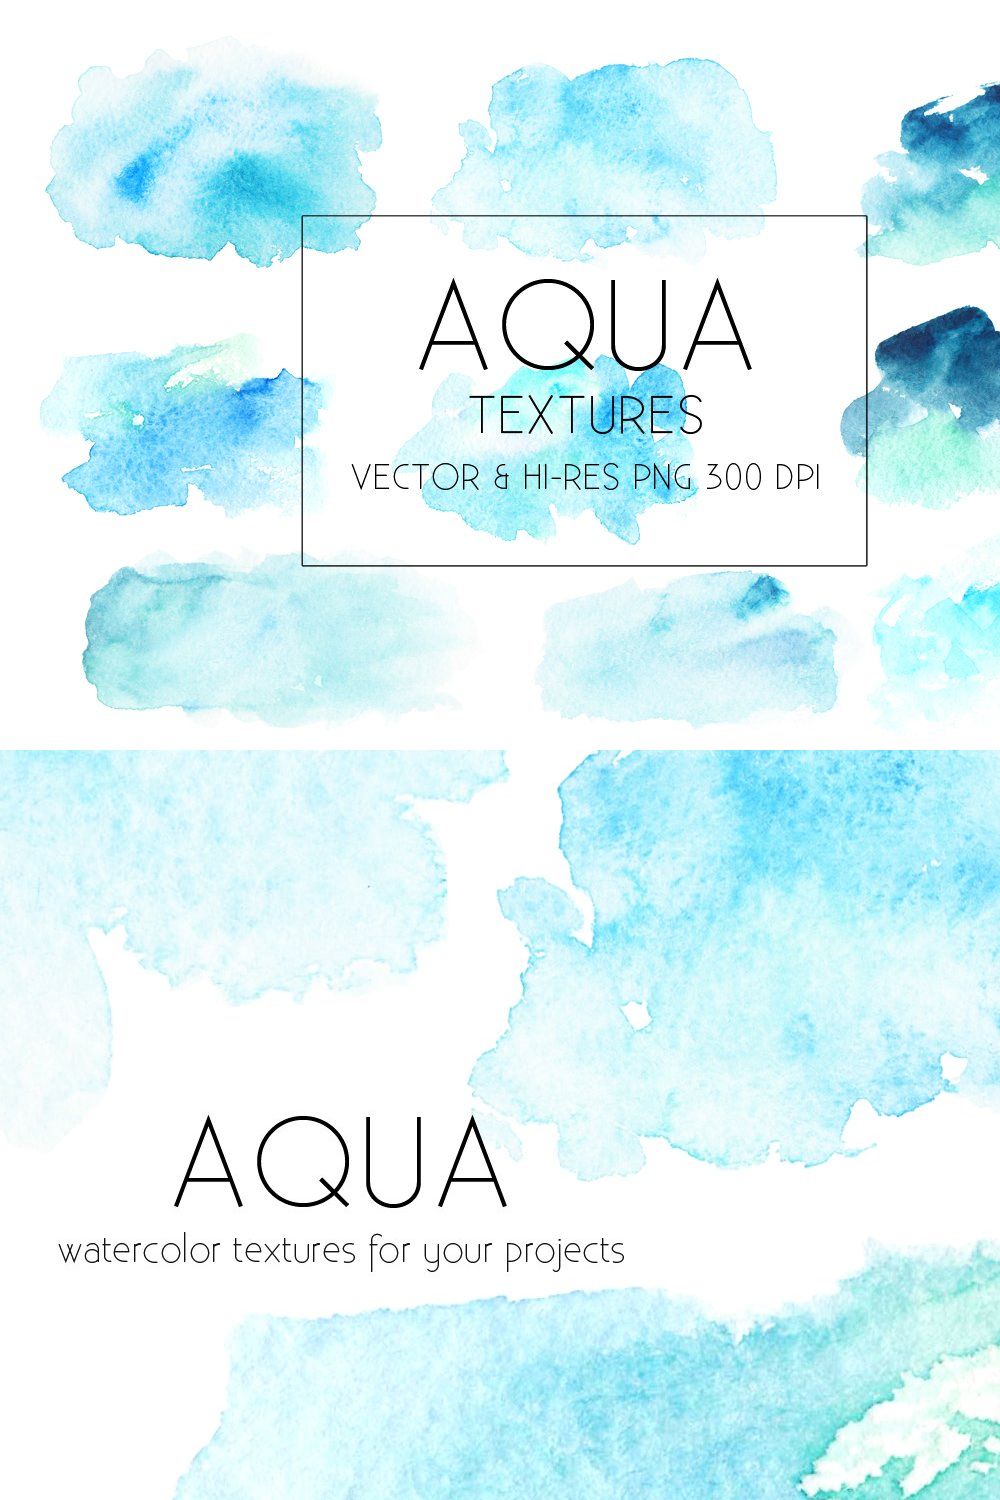 Aqua Watercolor Textures Vector&PNG pinterest preview image.